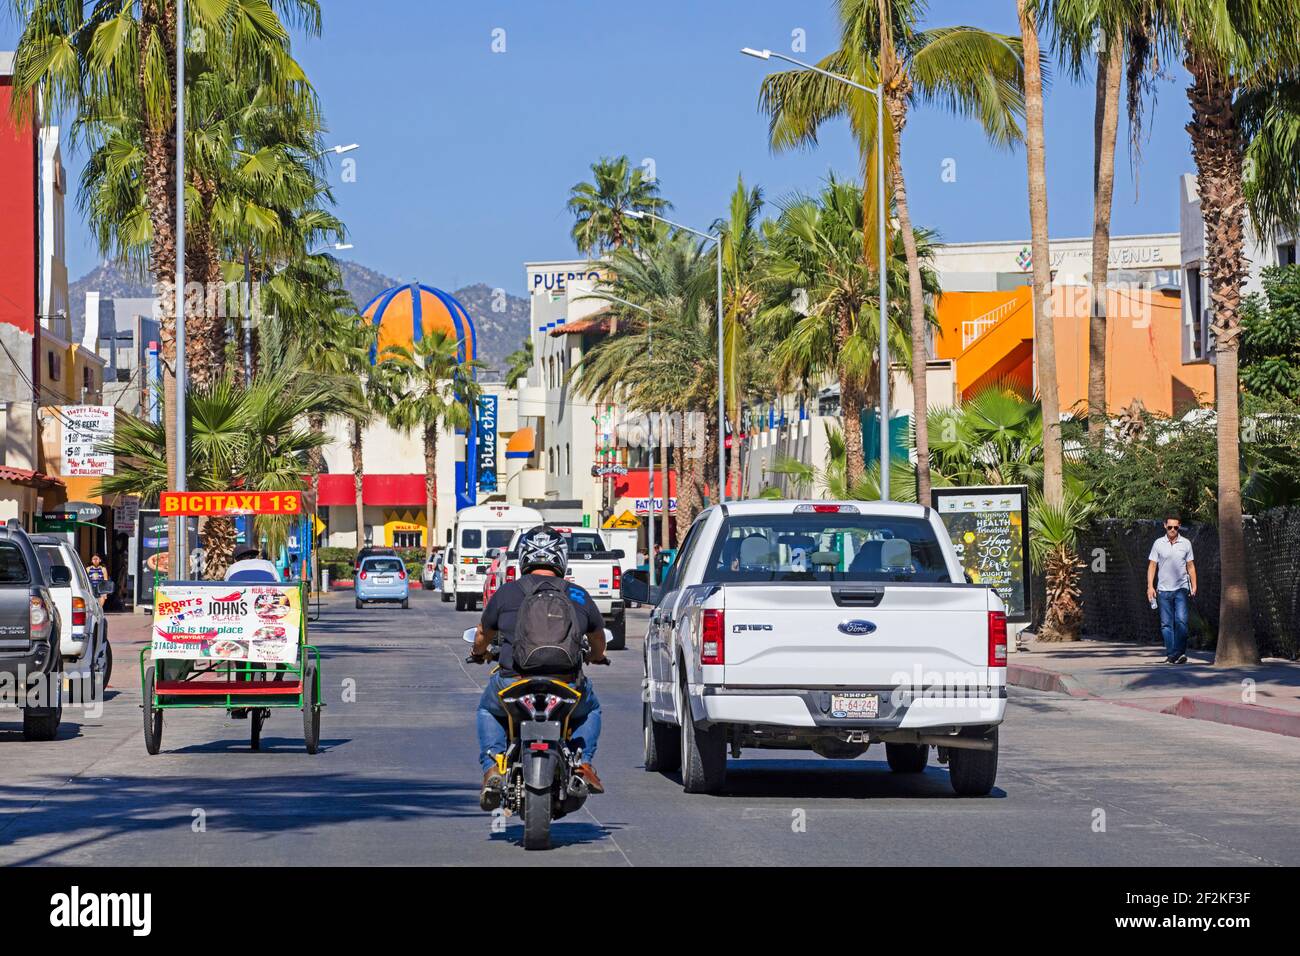 Calle en la calle principal de la ciudad Cabo San Lucas en la península de Baja California Sur, México Foto de stock